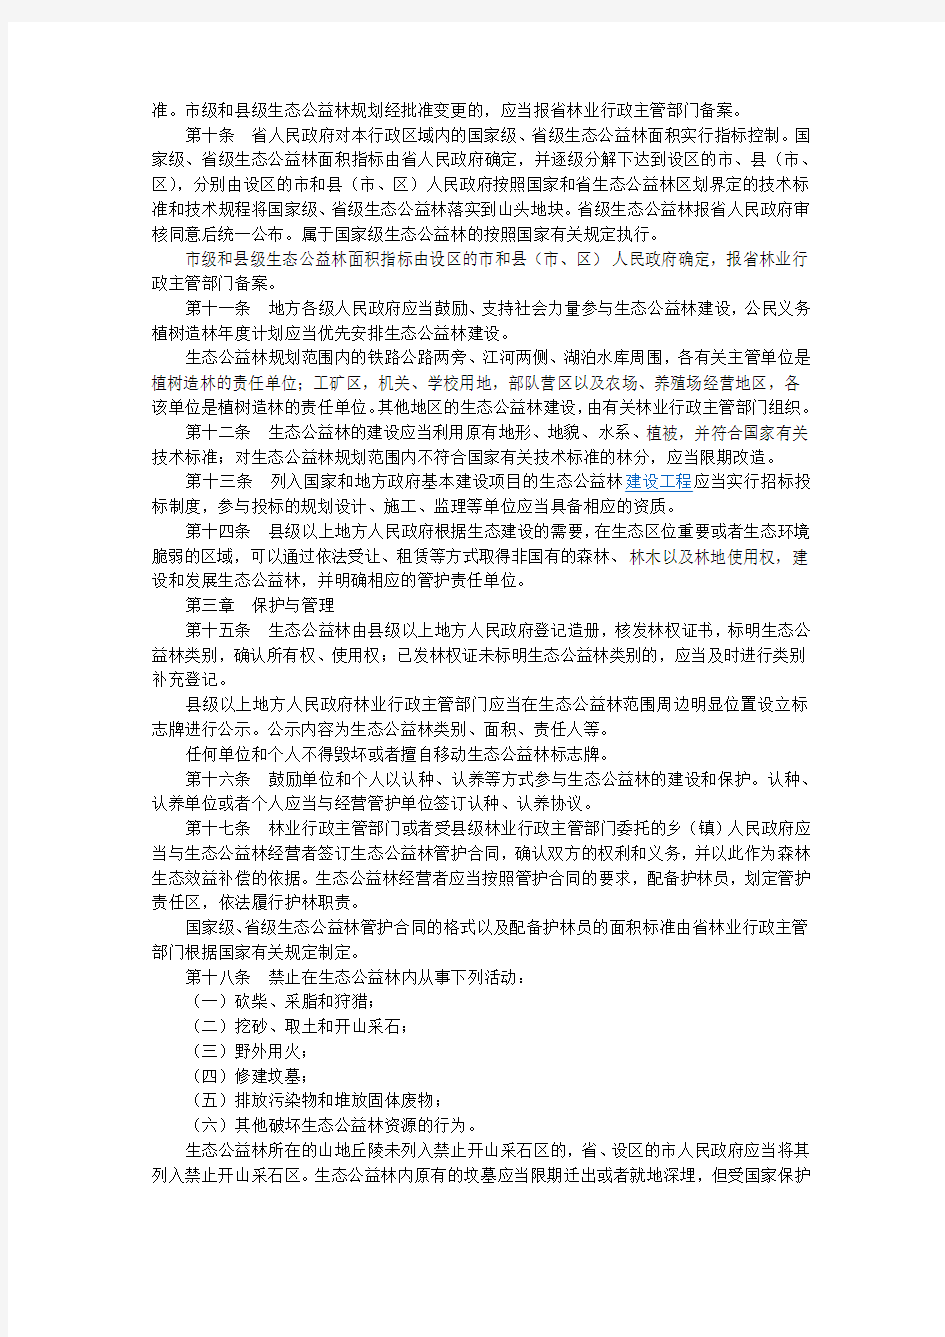 江苏省生态公益林条例(江苏省第十届人民代表大会常务委员会公告第123号)